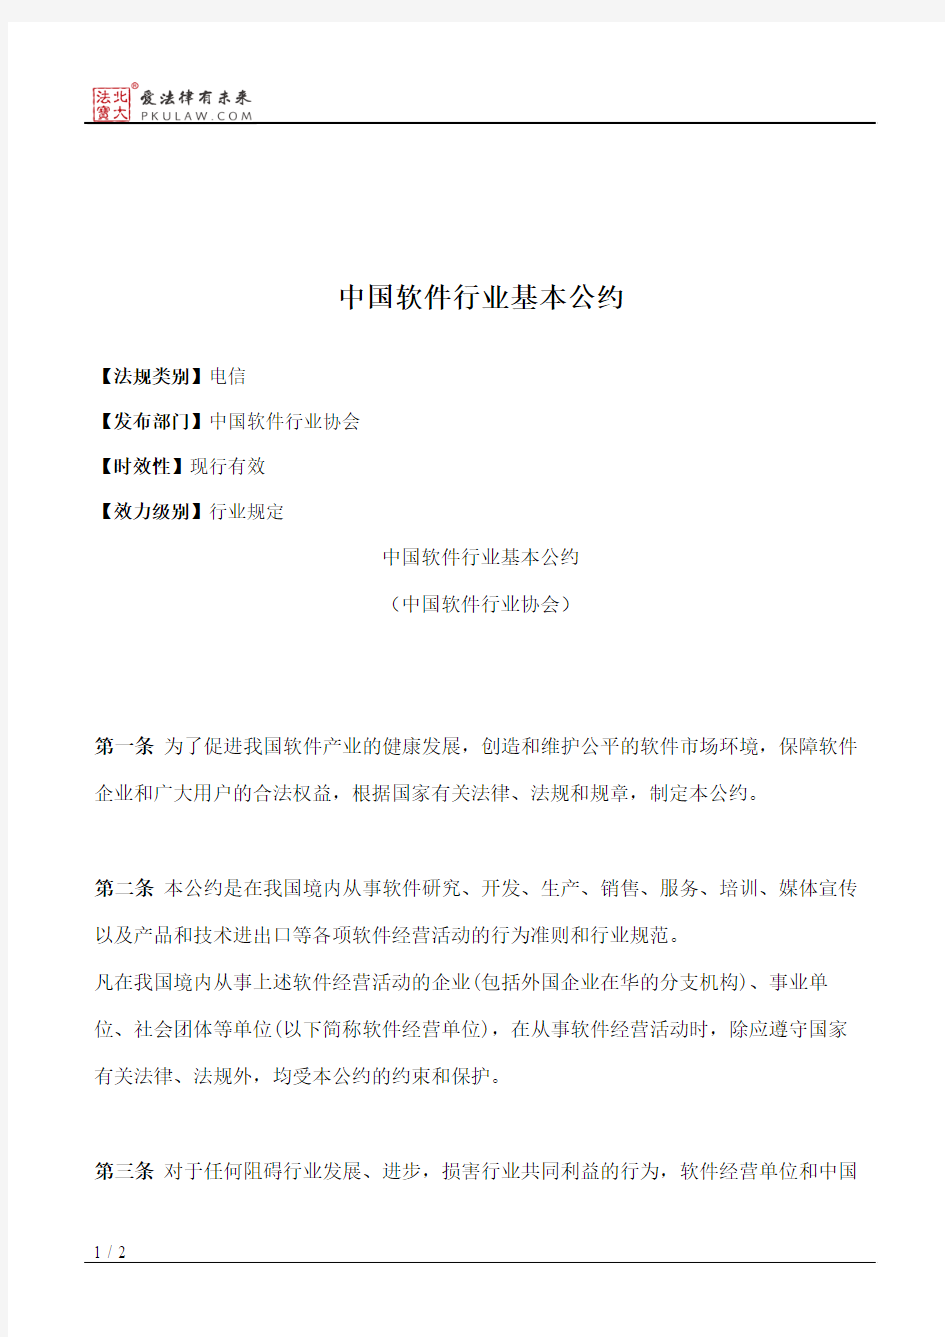 中国软件行业基本公约